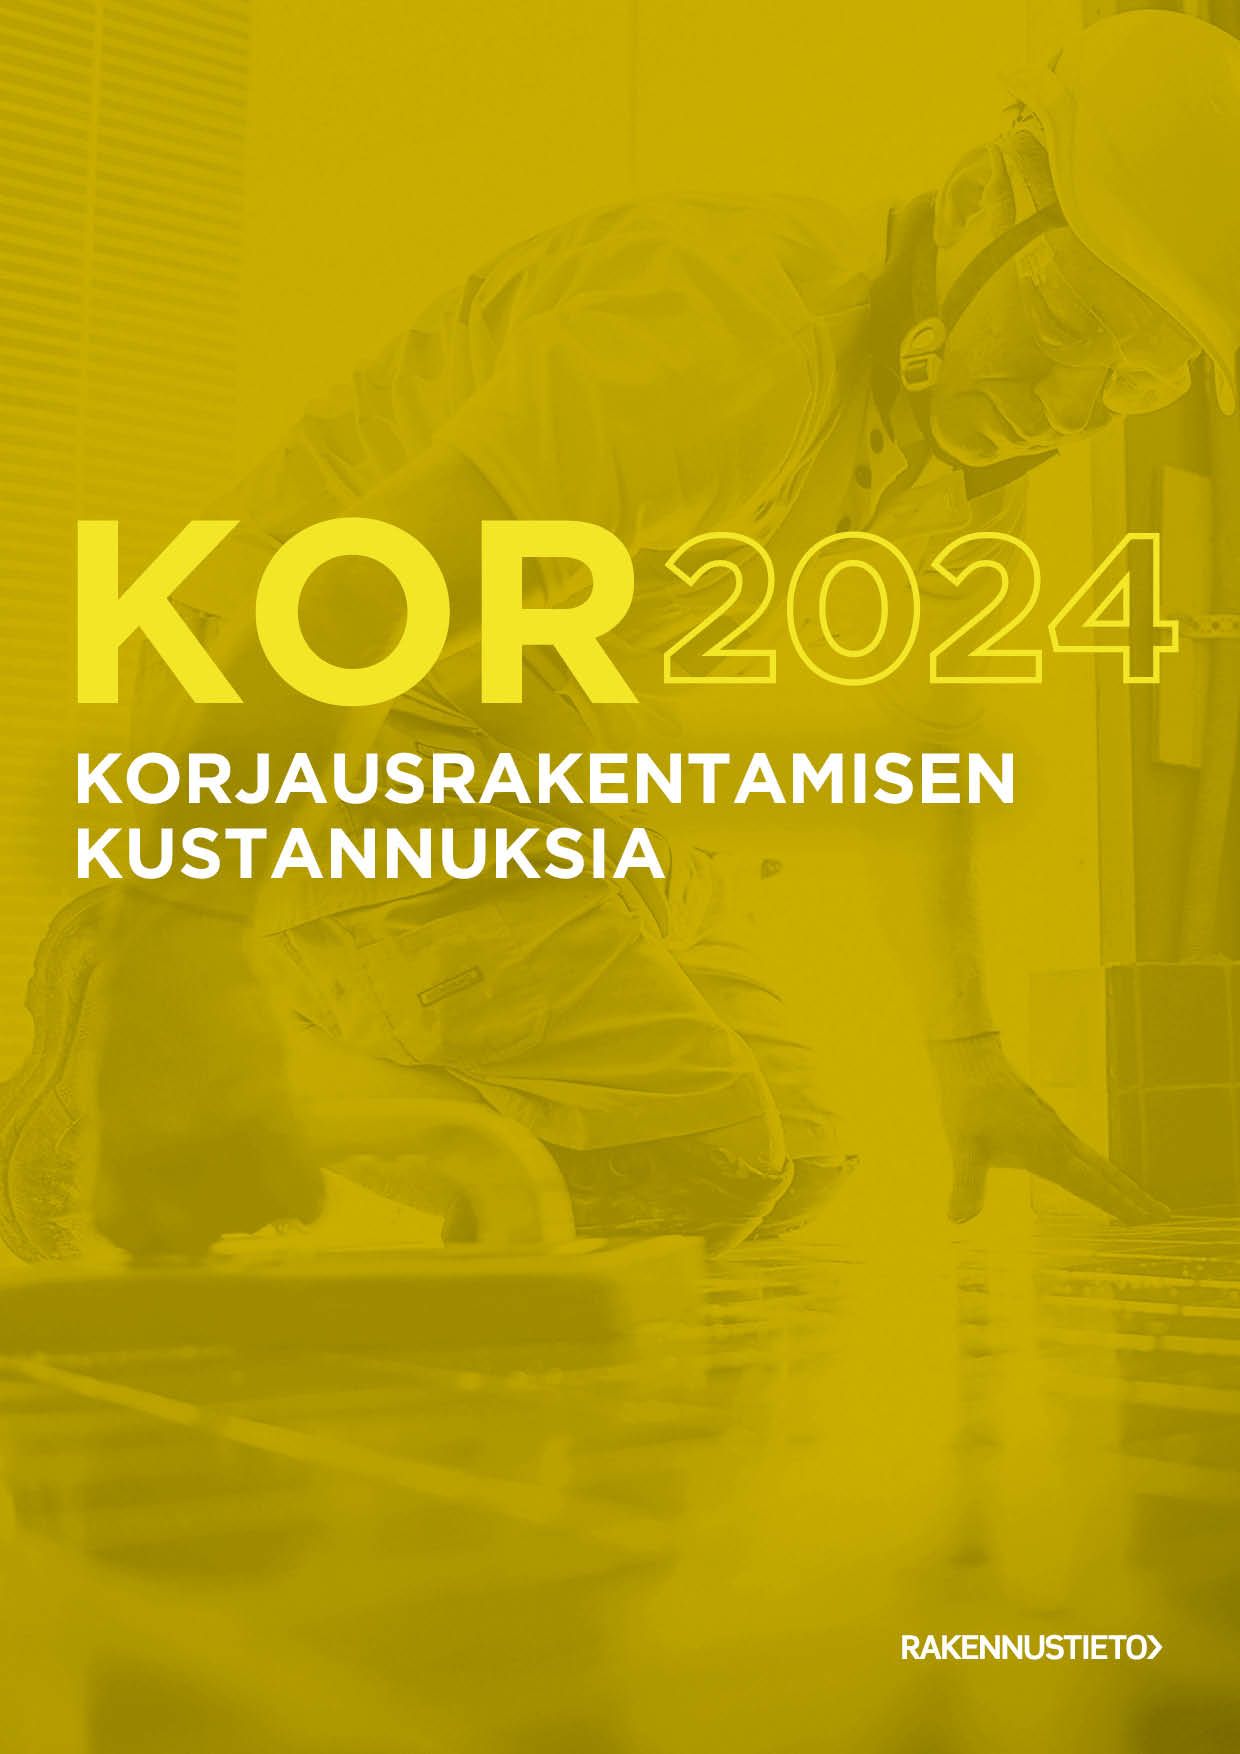 Rita Lindberg & Christian Kivimäki : Korjausrakentamisen kustannuksia 2024